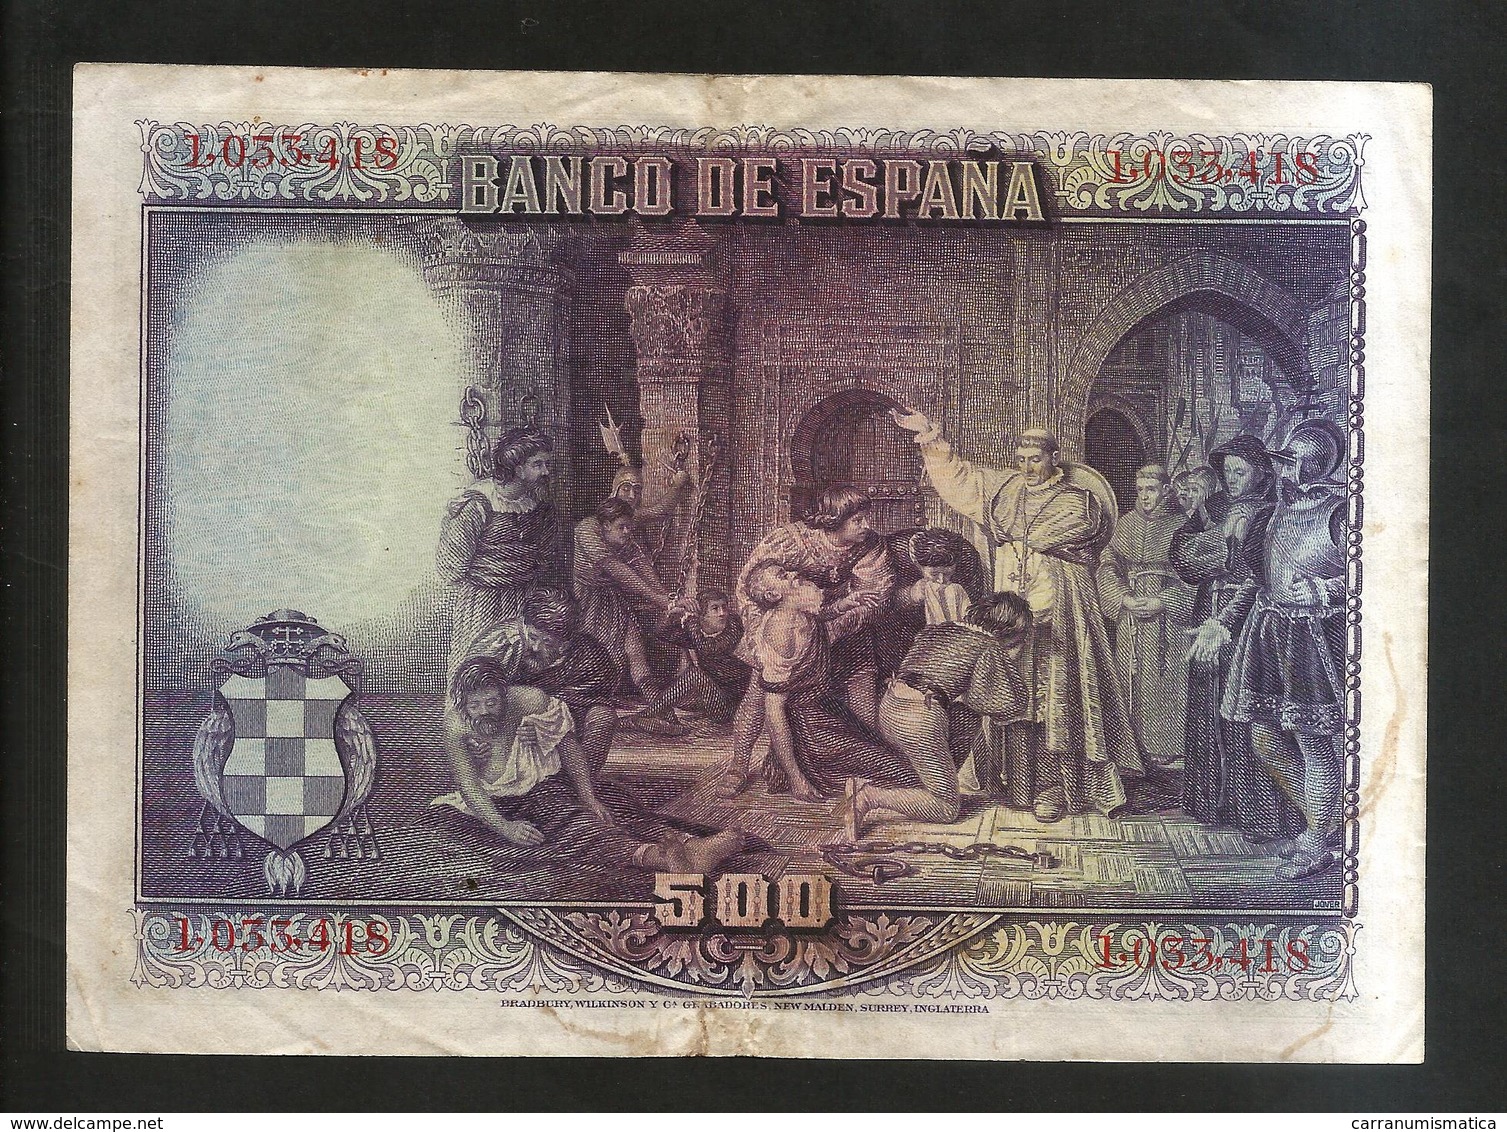 SPAGNA / SPAIN - BANCO De ESPANA - 500 Pesetas (MADRID 1928) CISNEROS - 500 Pesetas